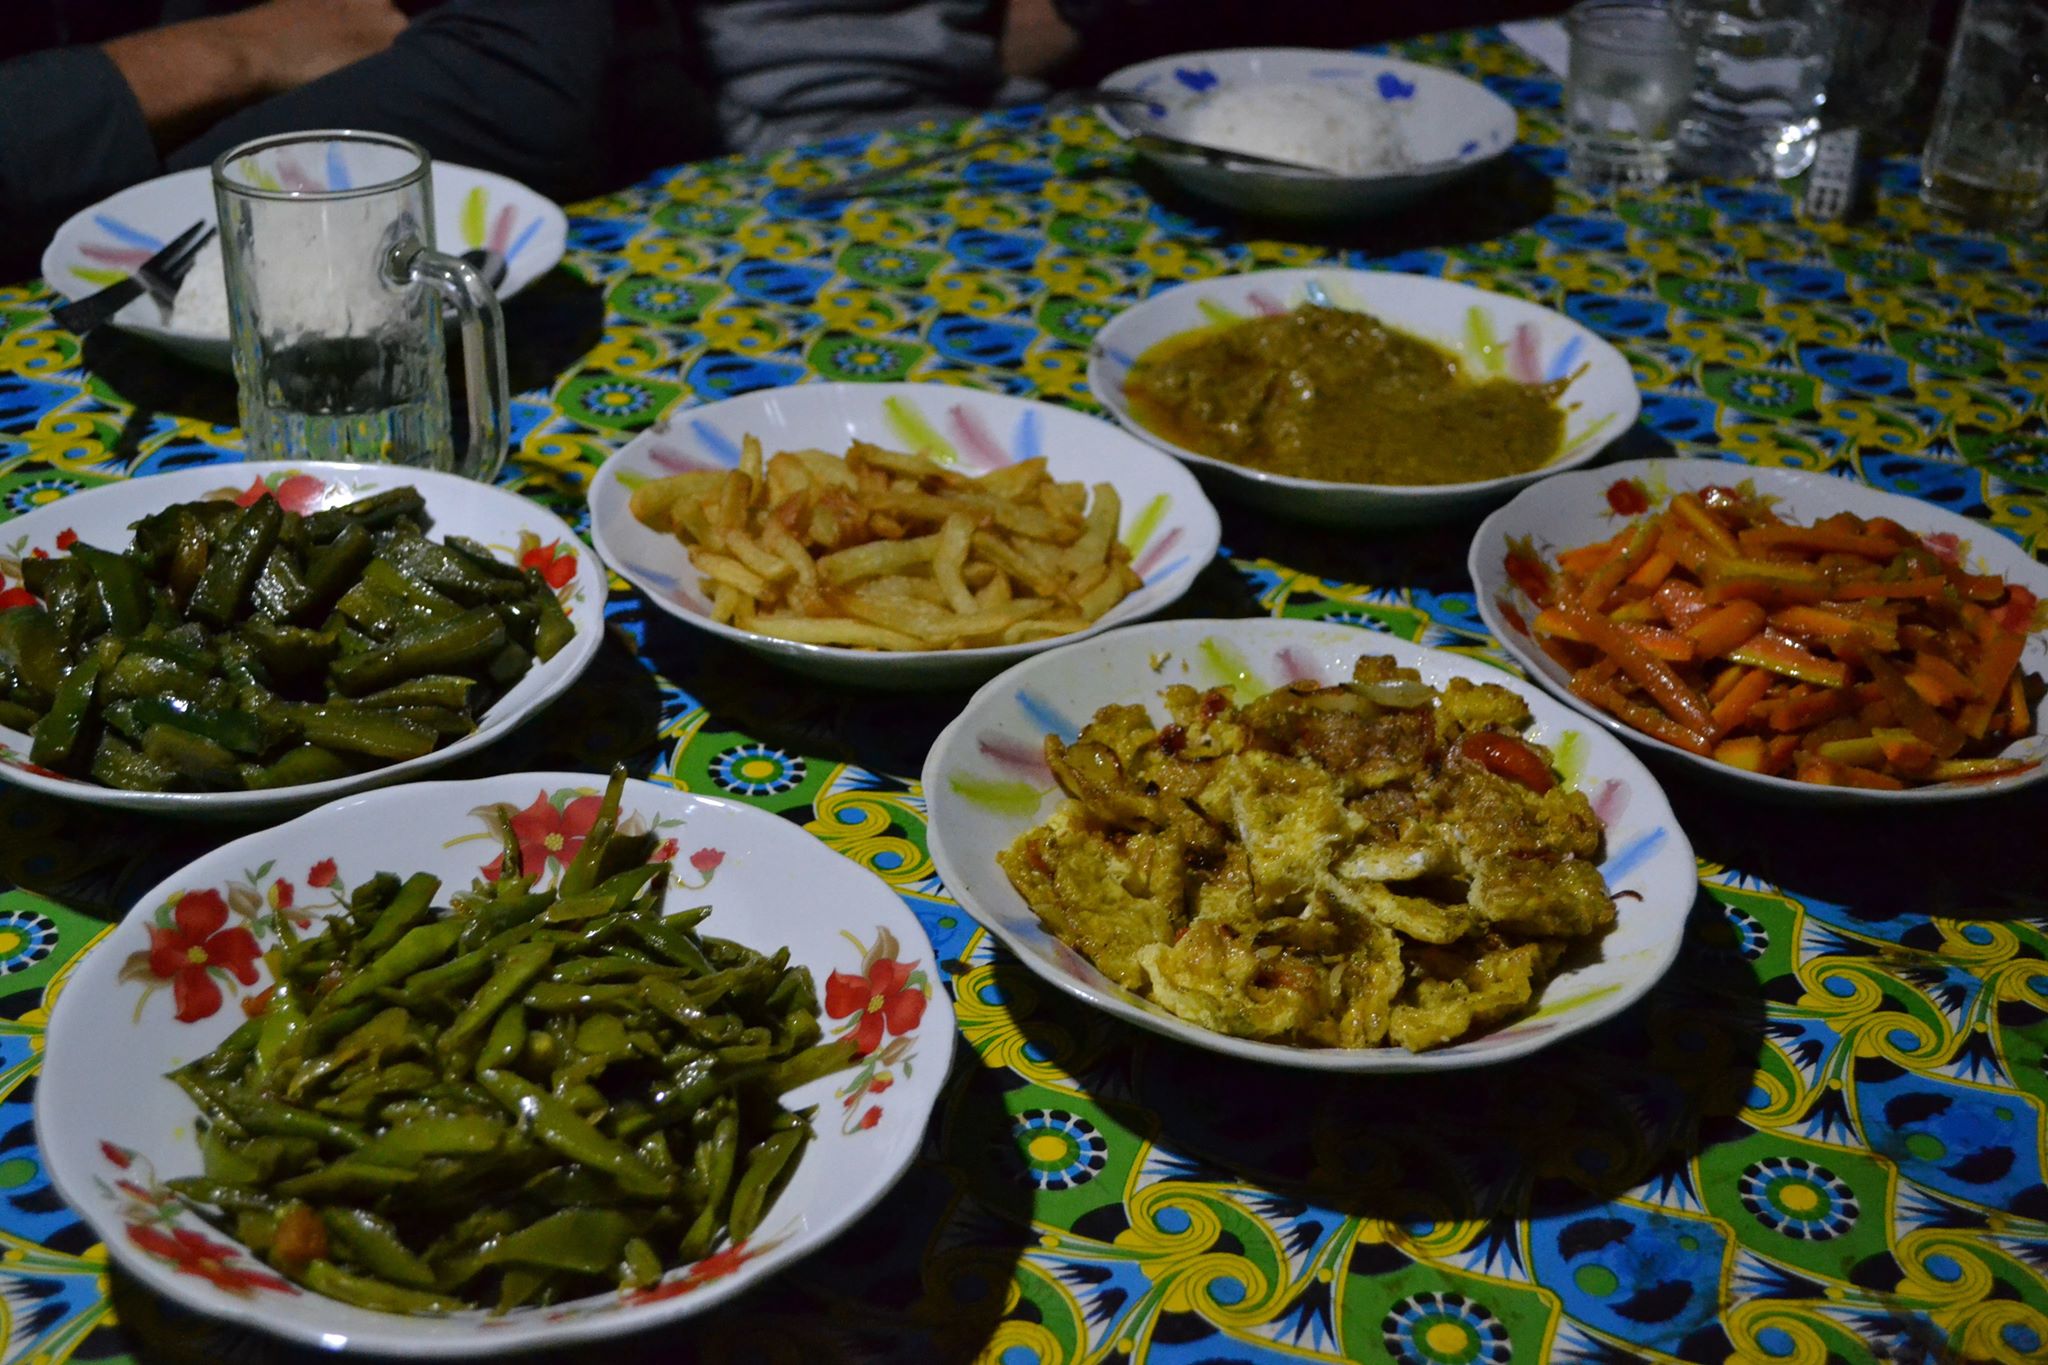 A híres második vacsora - földimogyoró curry, répa, rántotta, sültkrumpli, okra és zöldbab